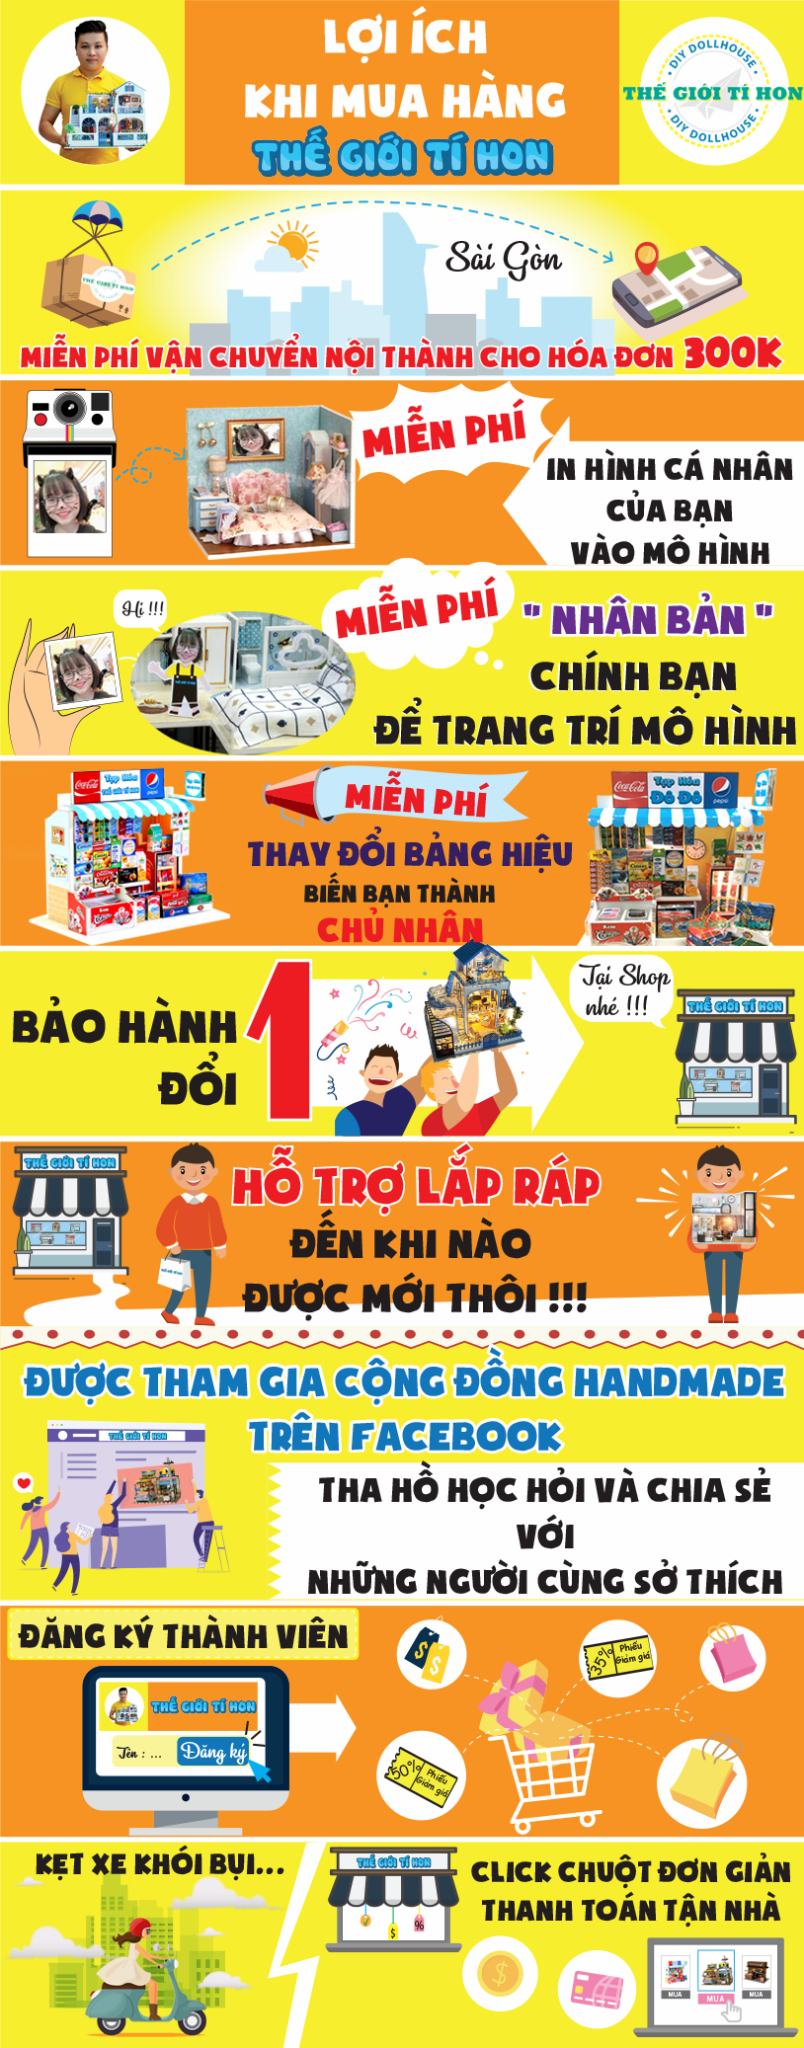 Sài Gòn Bé Xíu Mô Hình Đồ Chơi DIY Của Minh Nguyệt